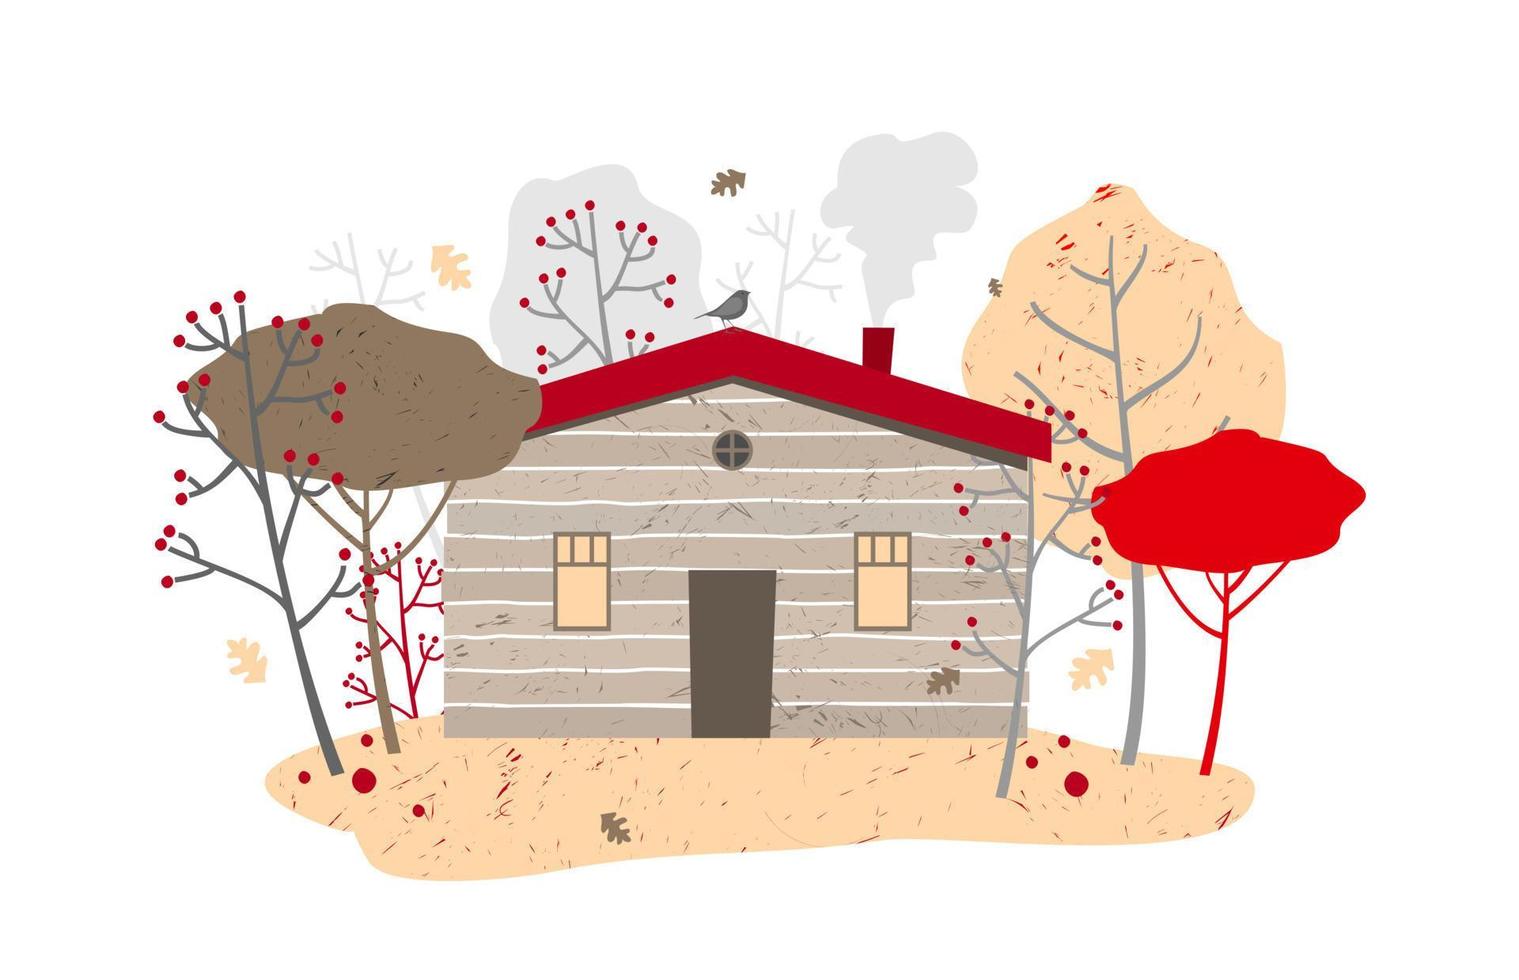 Holzhaus mit Heizung zwischen Herbstbäumen, Laubfall. vektor